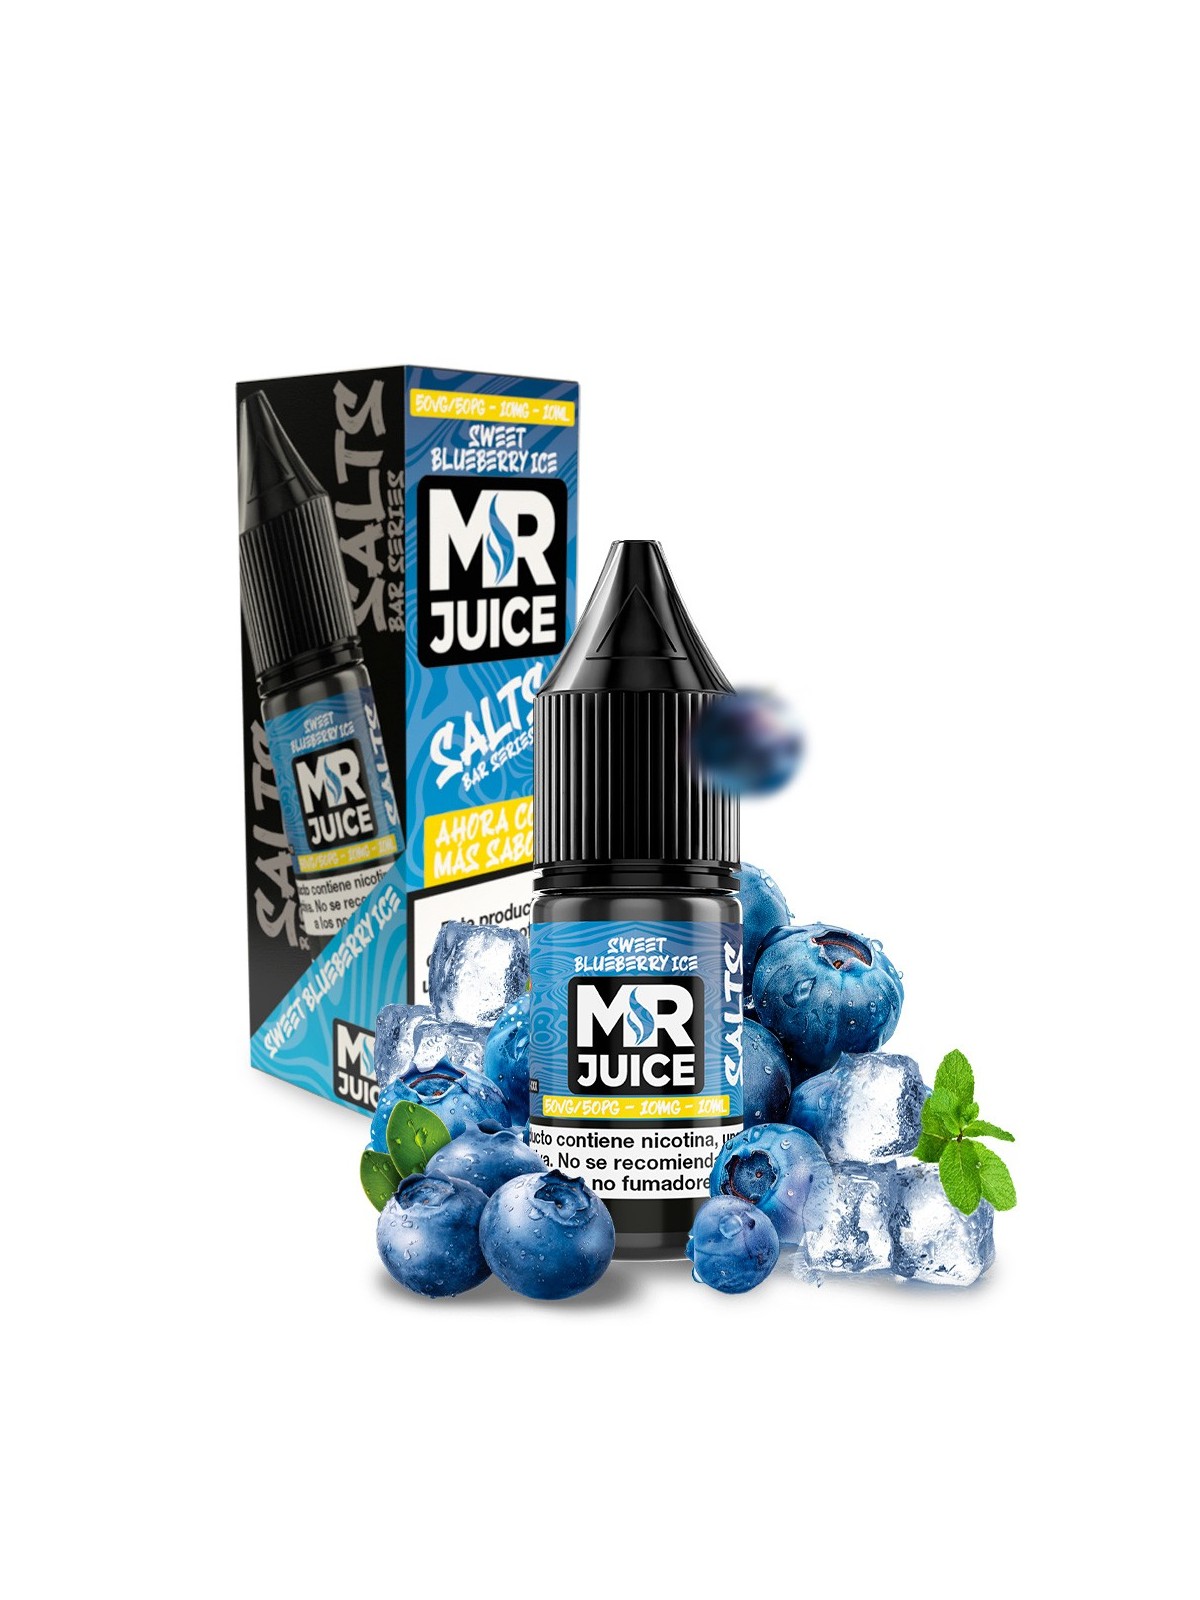 MRJ - SALES SWEET BLUEBERRY ICE MR. JUICE (10ML) MR. JUICE - 1